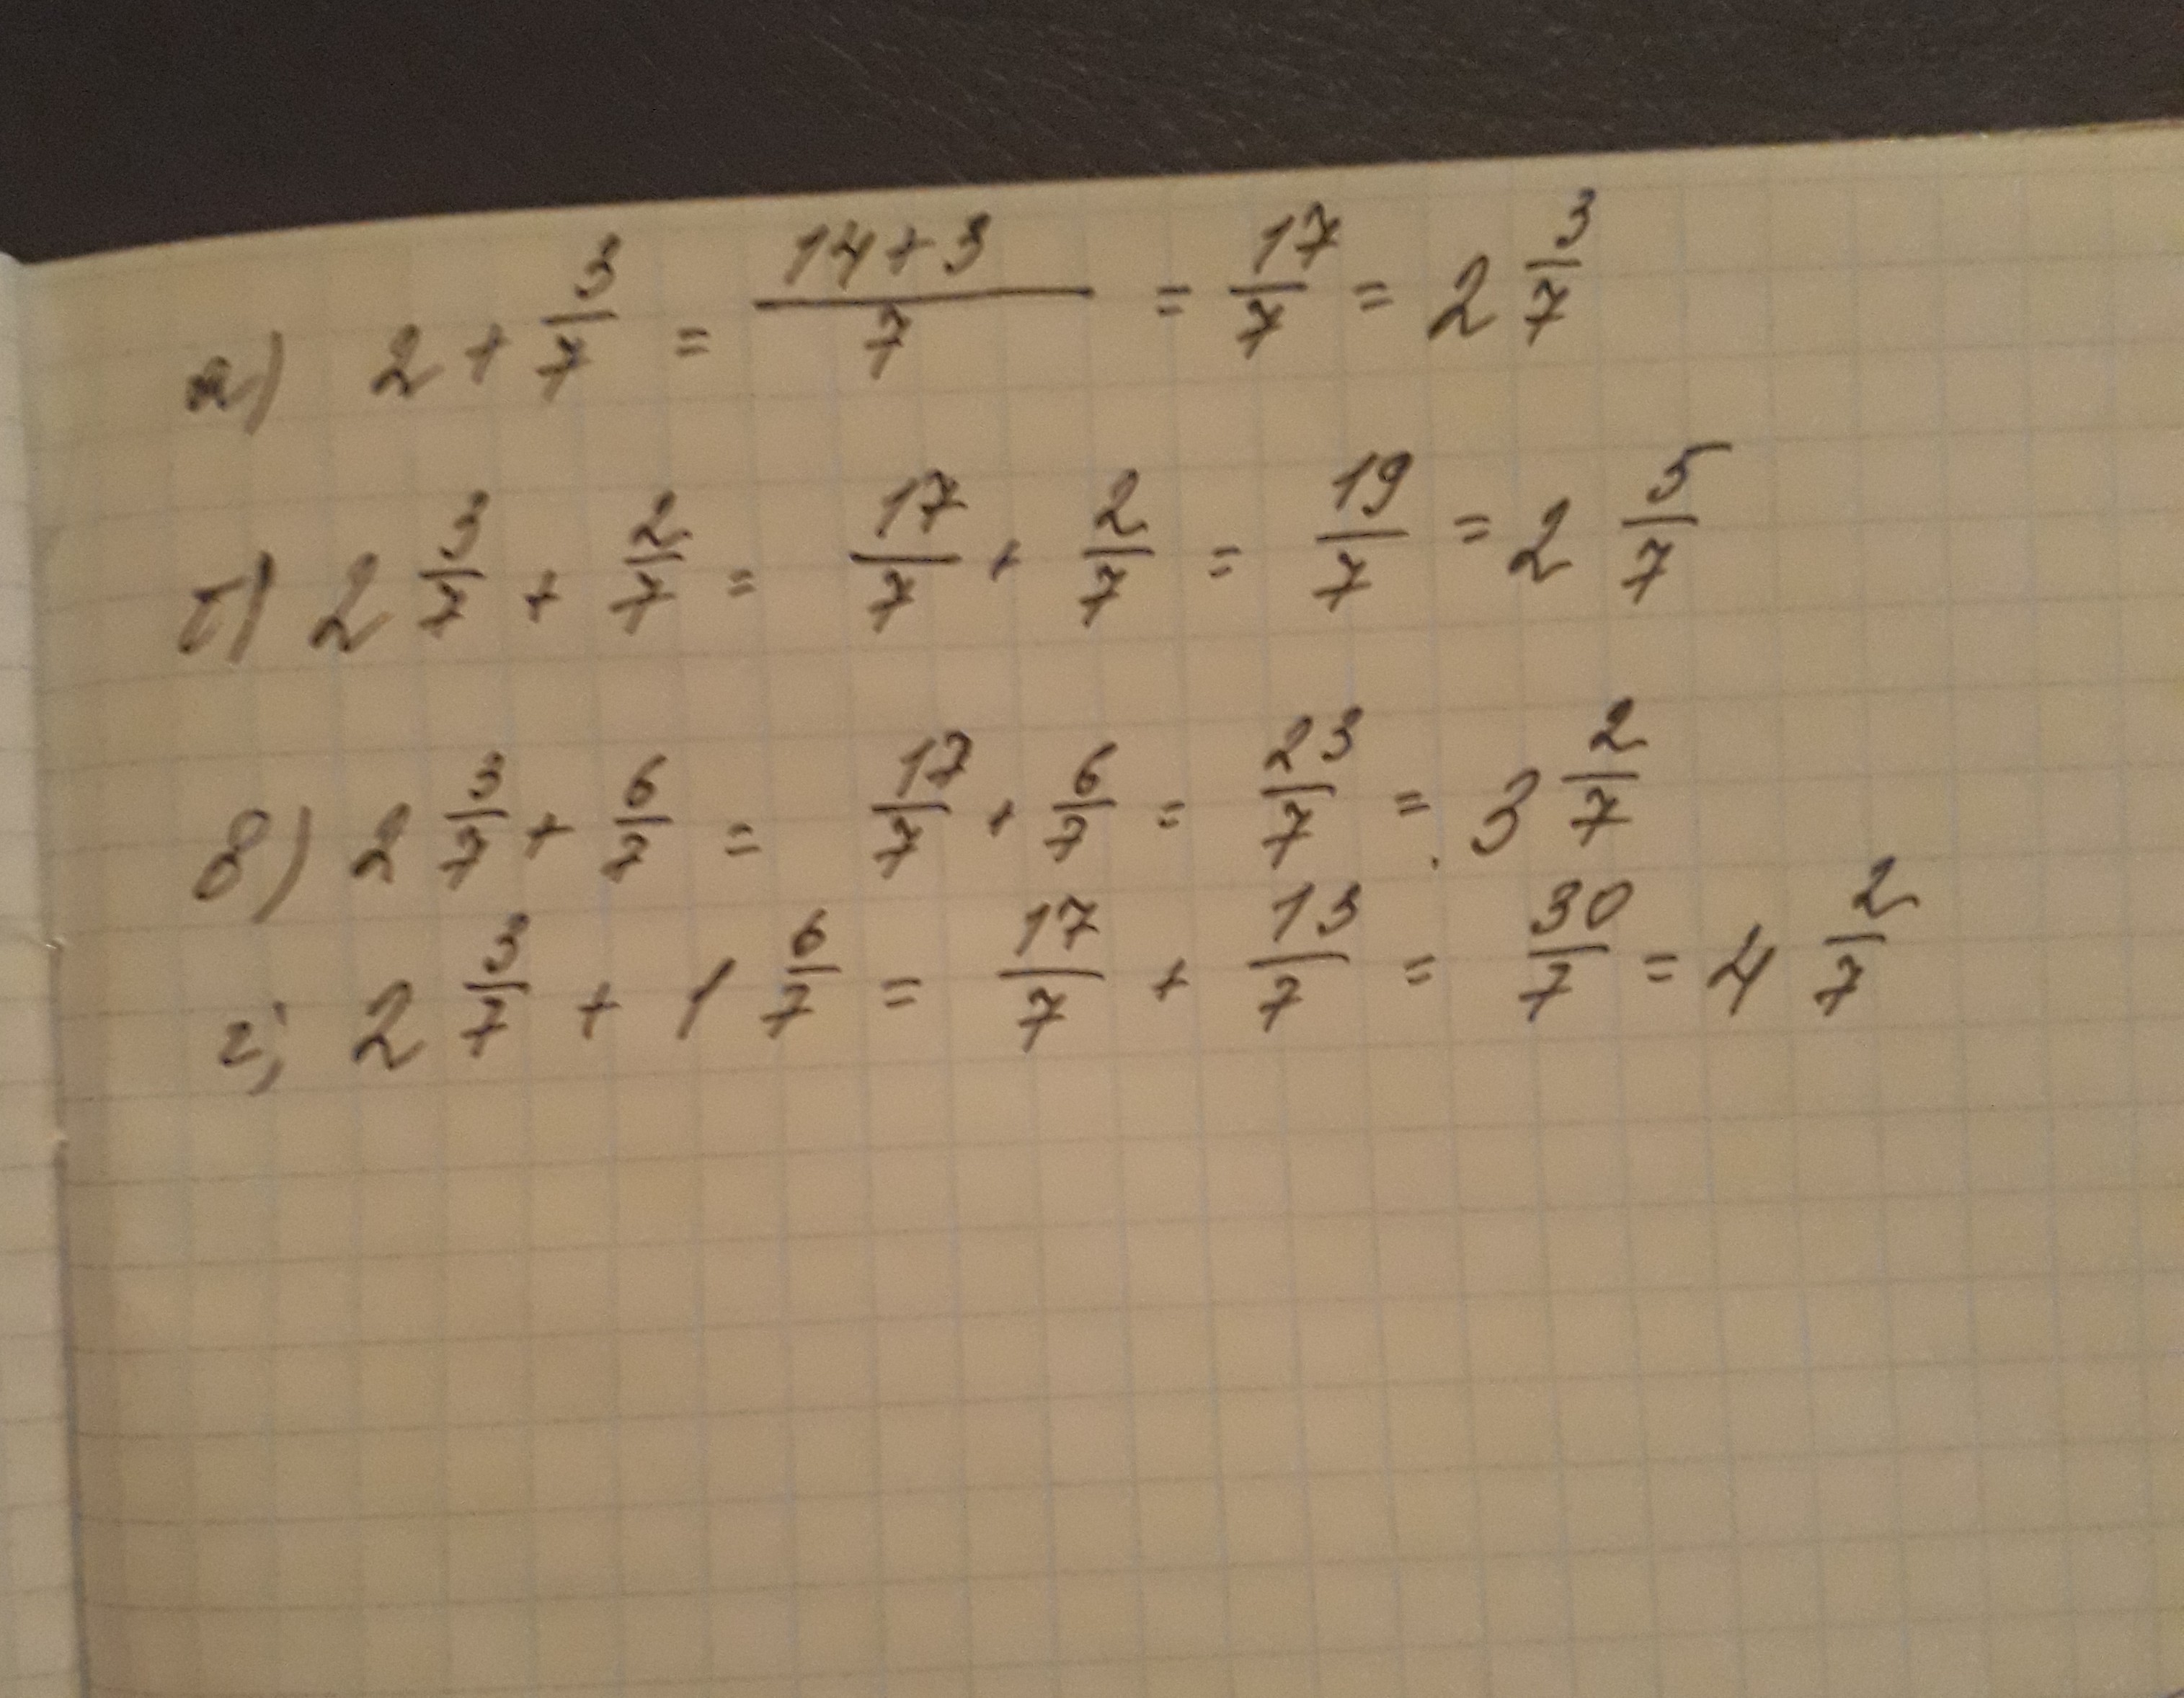 5 2 три седьмых. Вычислите 2/7. Вычислить -7+3 2. Вычислите 7 3 + 7 2. (−2)^7⋅6 Вычислите.